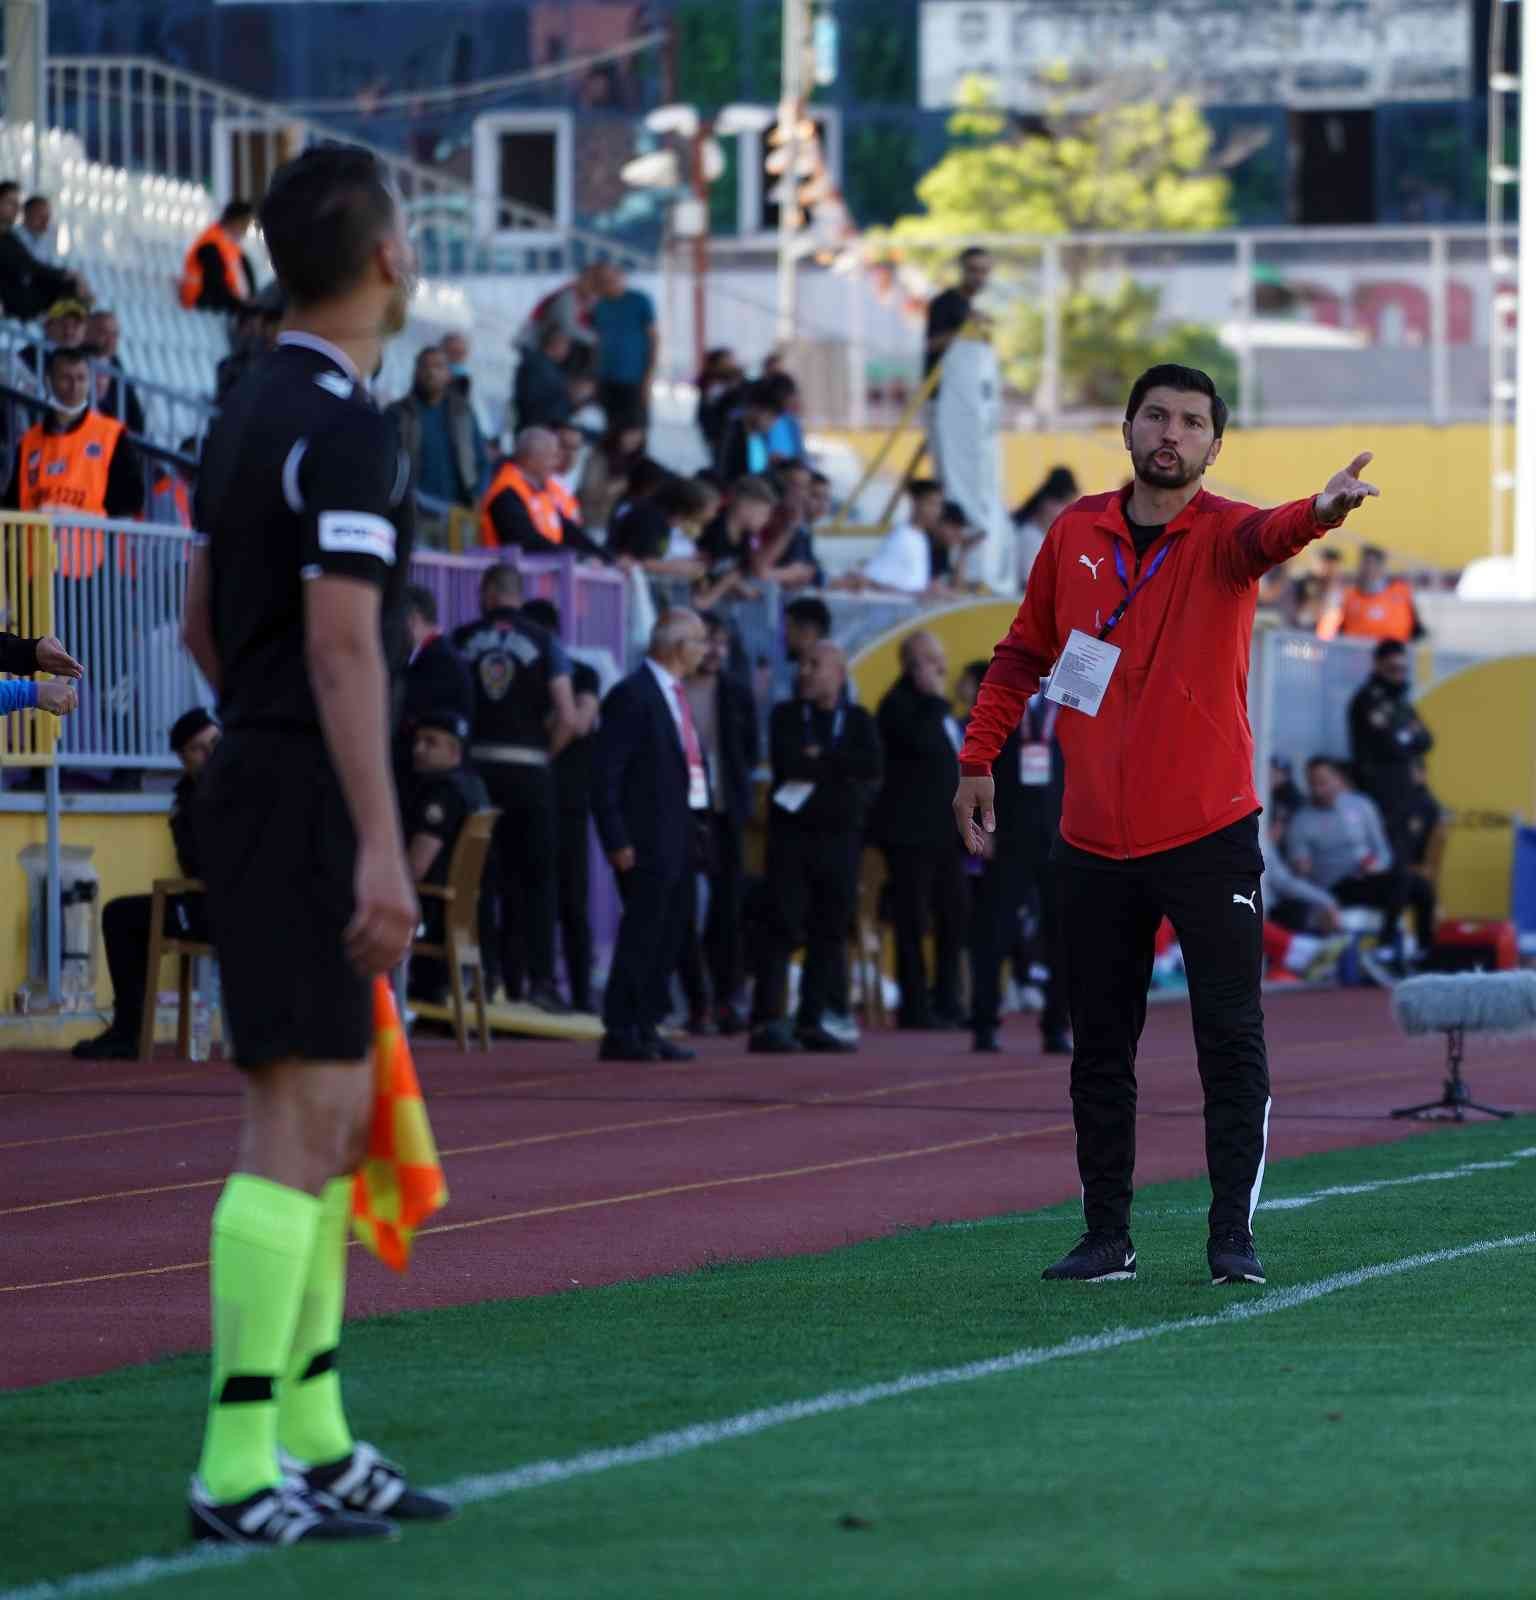 Spor Toto 1. Lig’in son haftasında Tuzlaspor, sahasında Samsunspor’a 4-2’lik skorla mağlup oldu. Maçtan dakikalar 5. dakikada ceza sahası içi ...